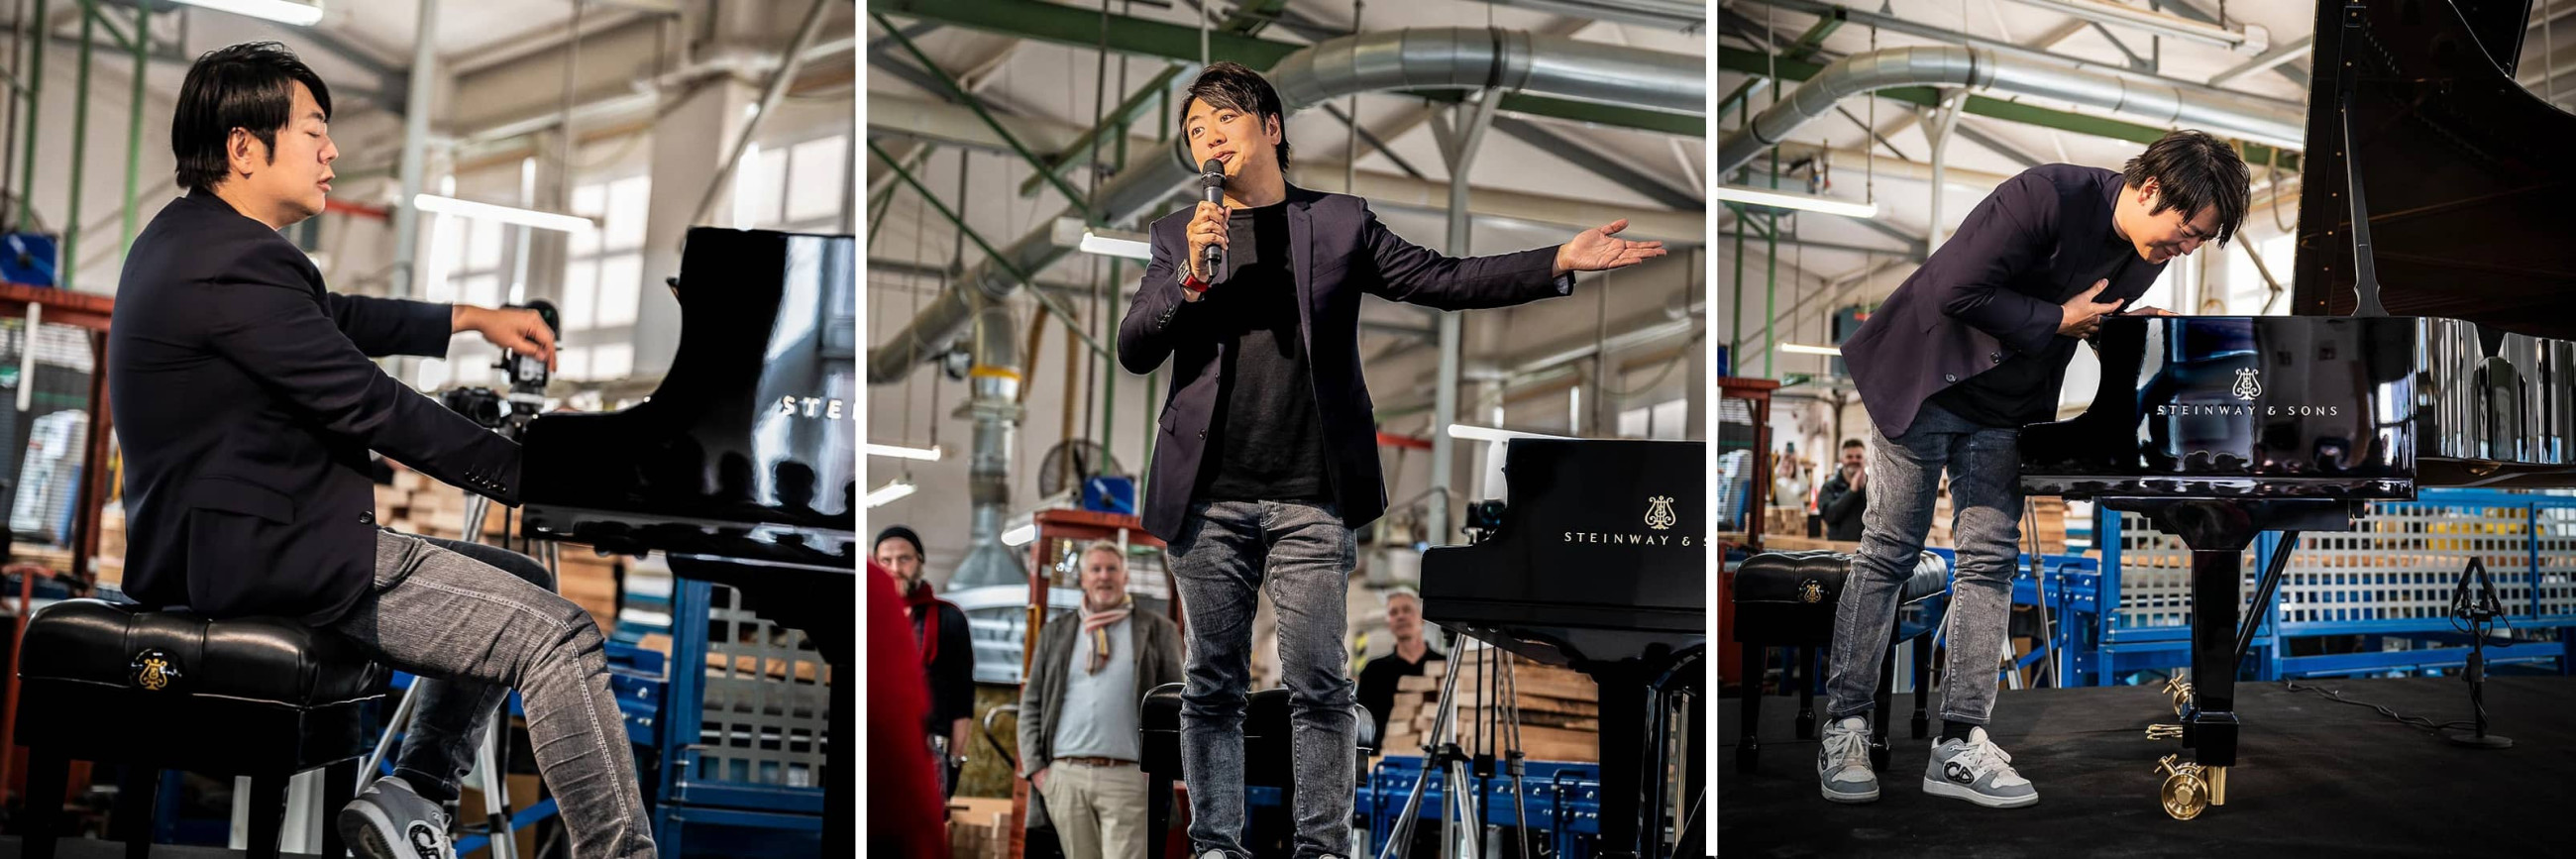 Піаніст Ланг Ланг на сцені під час концерту на фабриці Steinway в Гамбургу